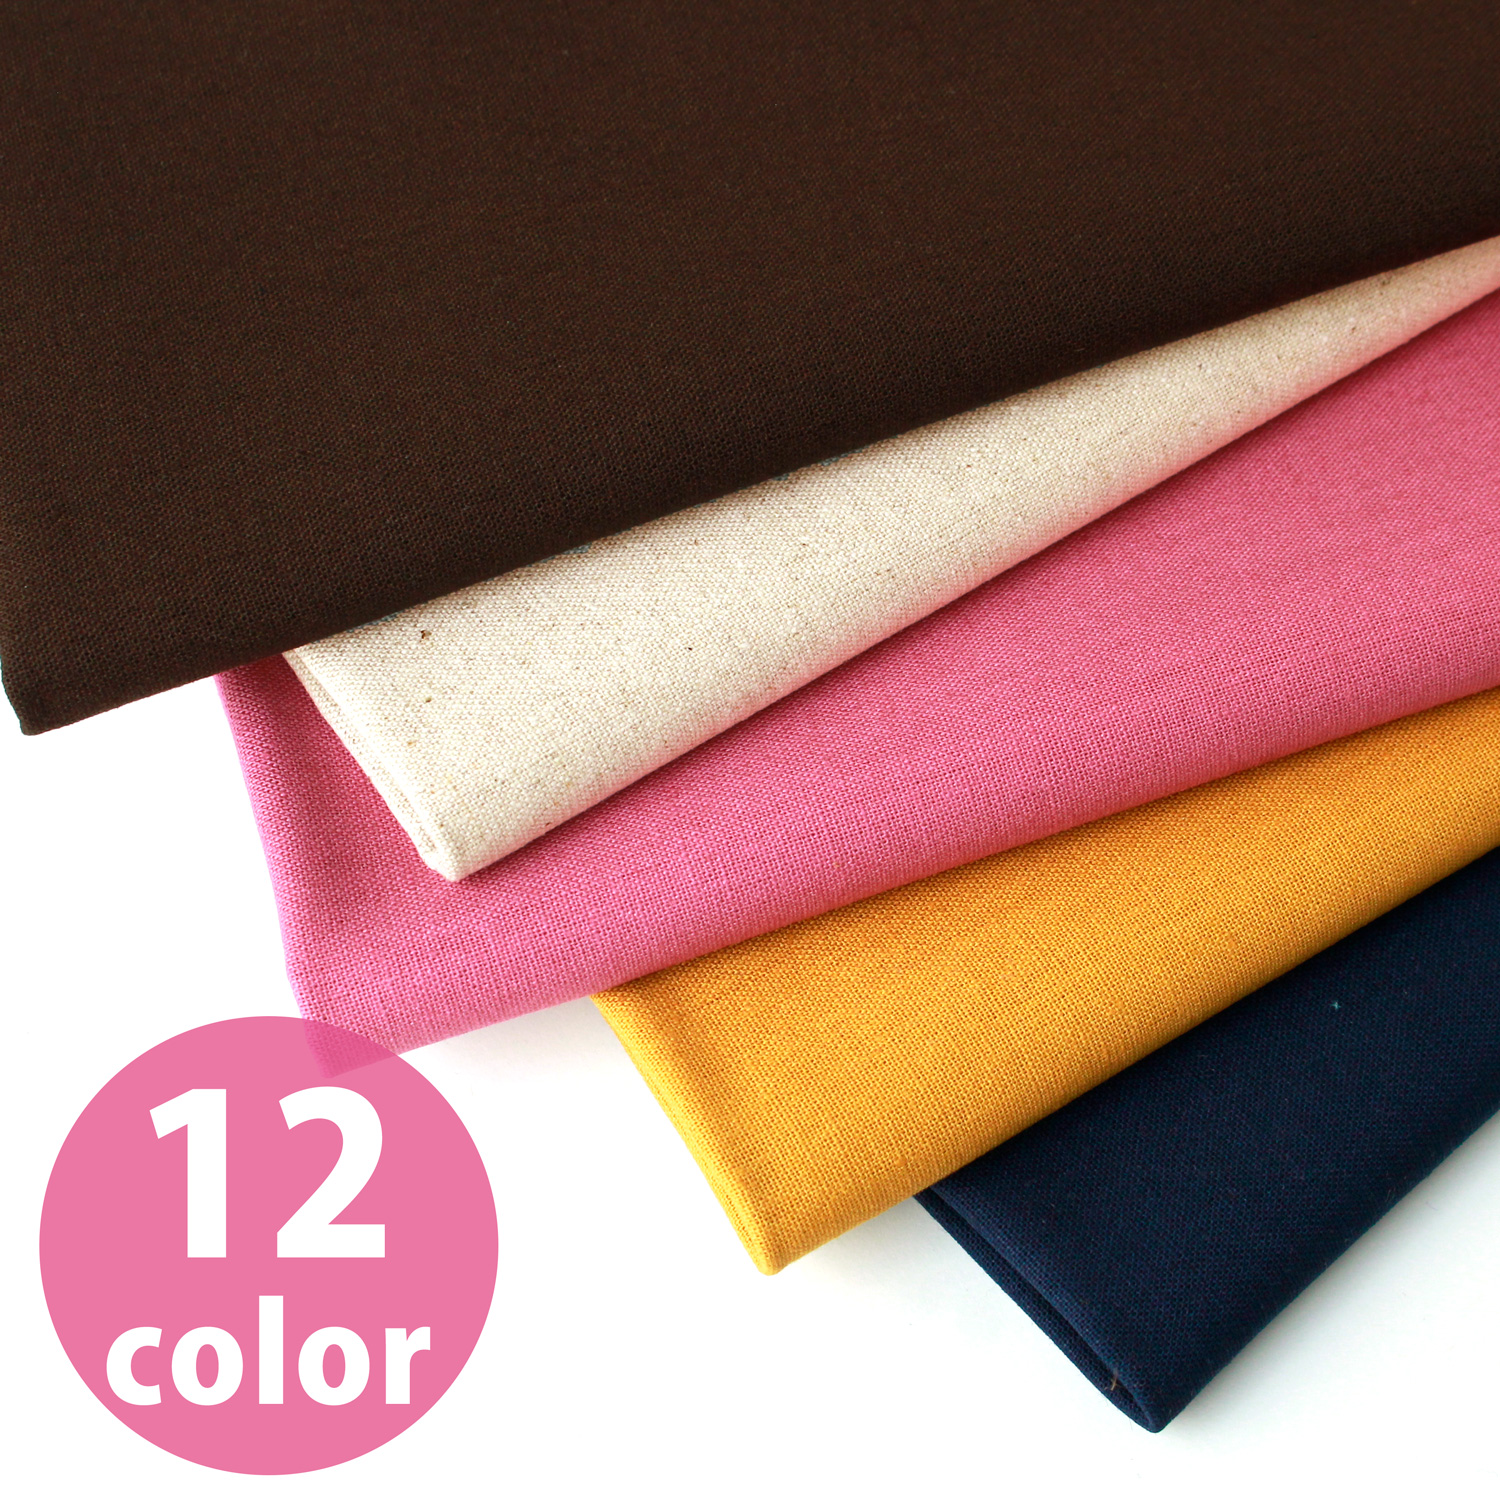 ■ICH19000R-10 Cotton/Linen Canvas Vivid Color 12m Bolt (roll)